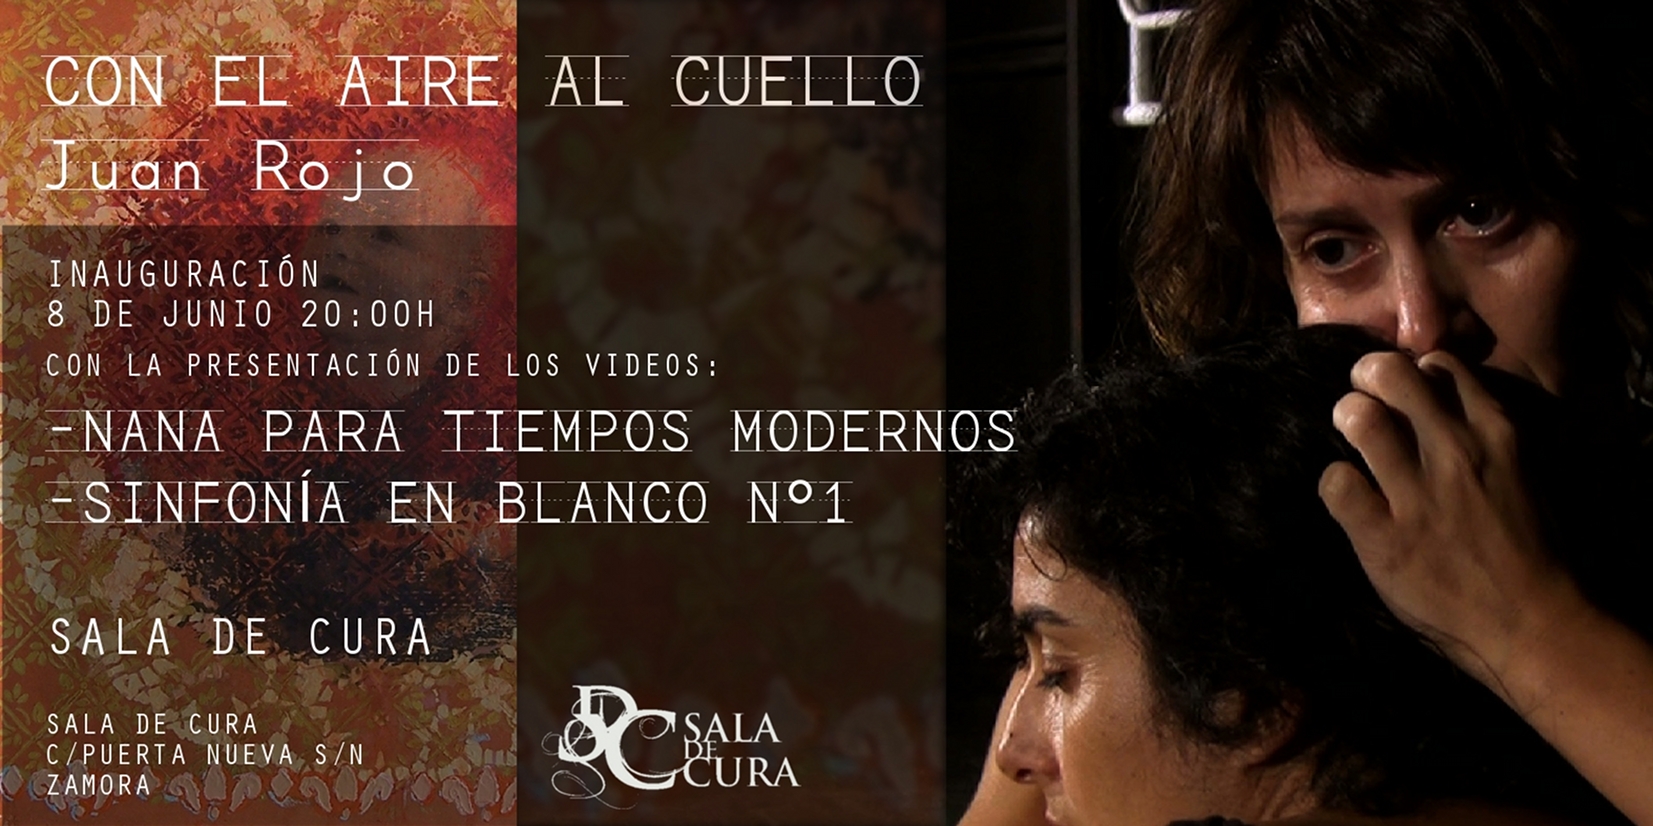 El artista vallisoletano Juan Rojo inaugura exposición en la Casa del Cura (Zamora)